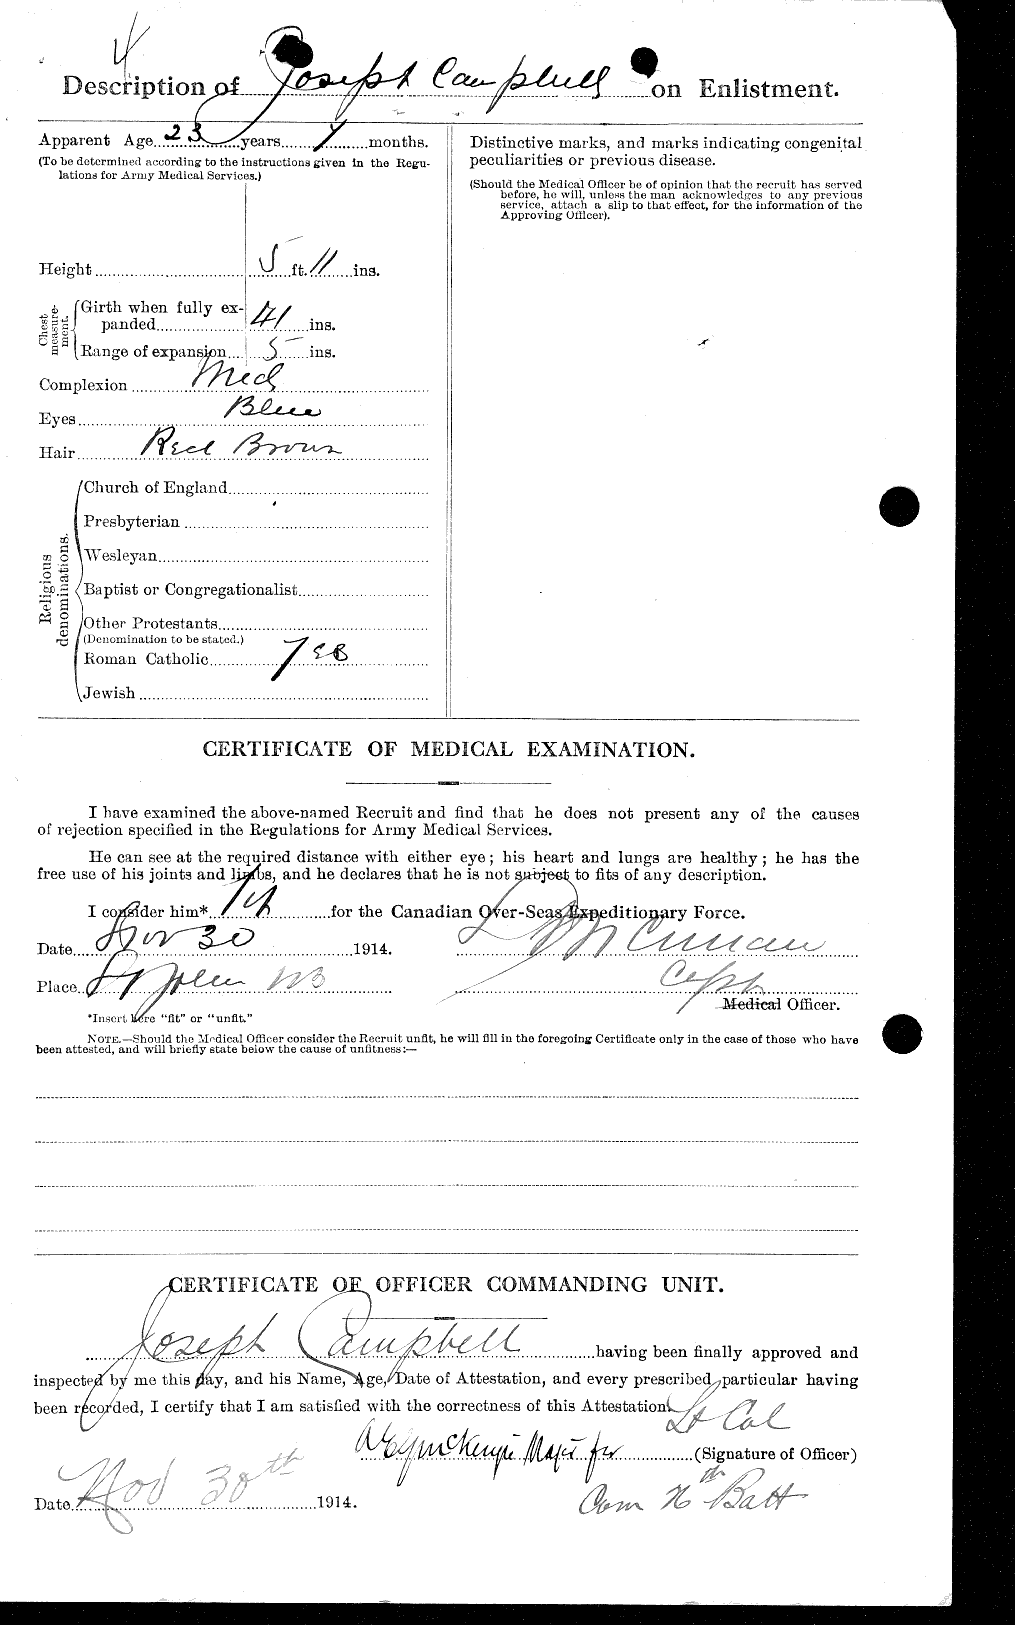 Dossiers du Personnel de la Première Guerre mondiale - CEC 004964b